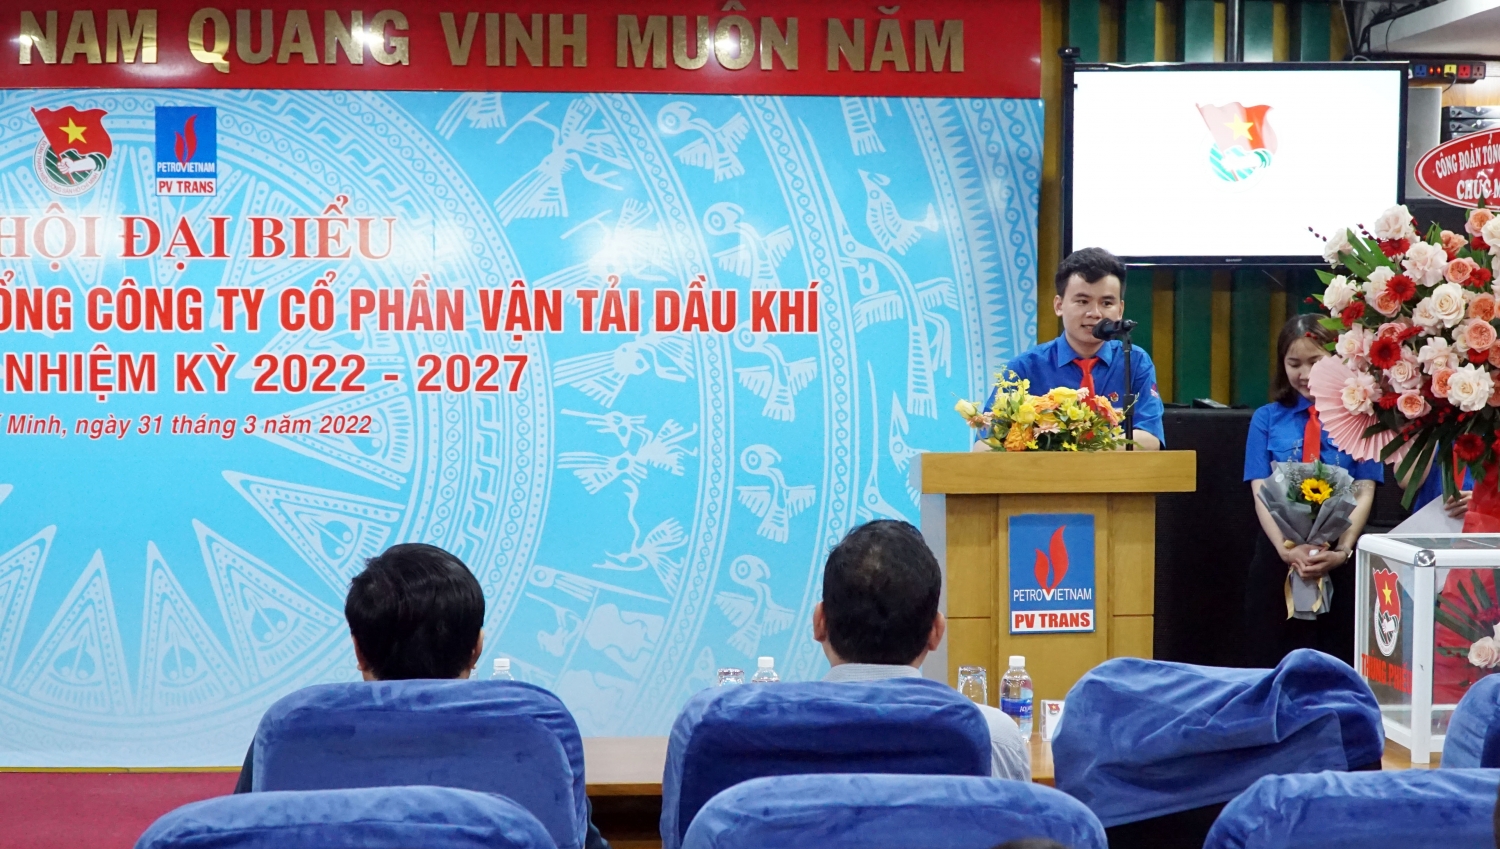 Đồng chí Lê Trọng An - Bí thư Đoàn Thanh niên PVTrans nhiệm kỳ 2022 - 2027 phát biểu thể hiện quyết tâm của Đoàn Thanh niên TCT trong nhiệm kỳ mới